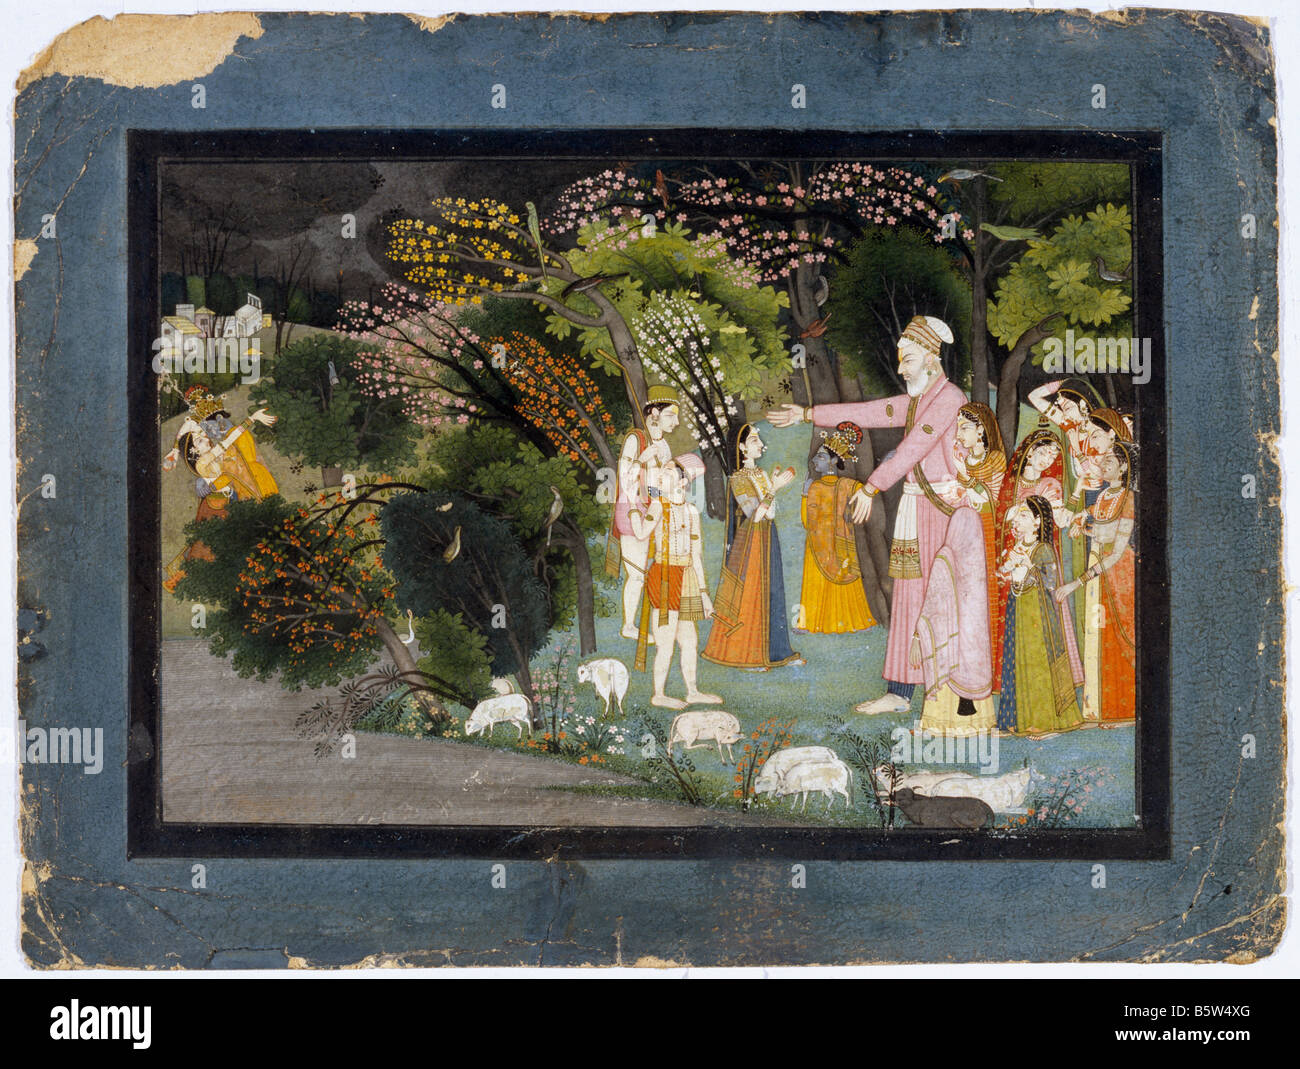 Nanda Fragen Radha Escort Krishna zurück nach Hause. Gita Govinda. Garhwal Ende des 18. Jahrhunderts. National Museum of New Delhi Indien 51. Stockfoto